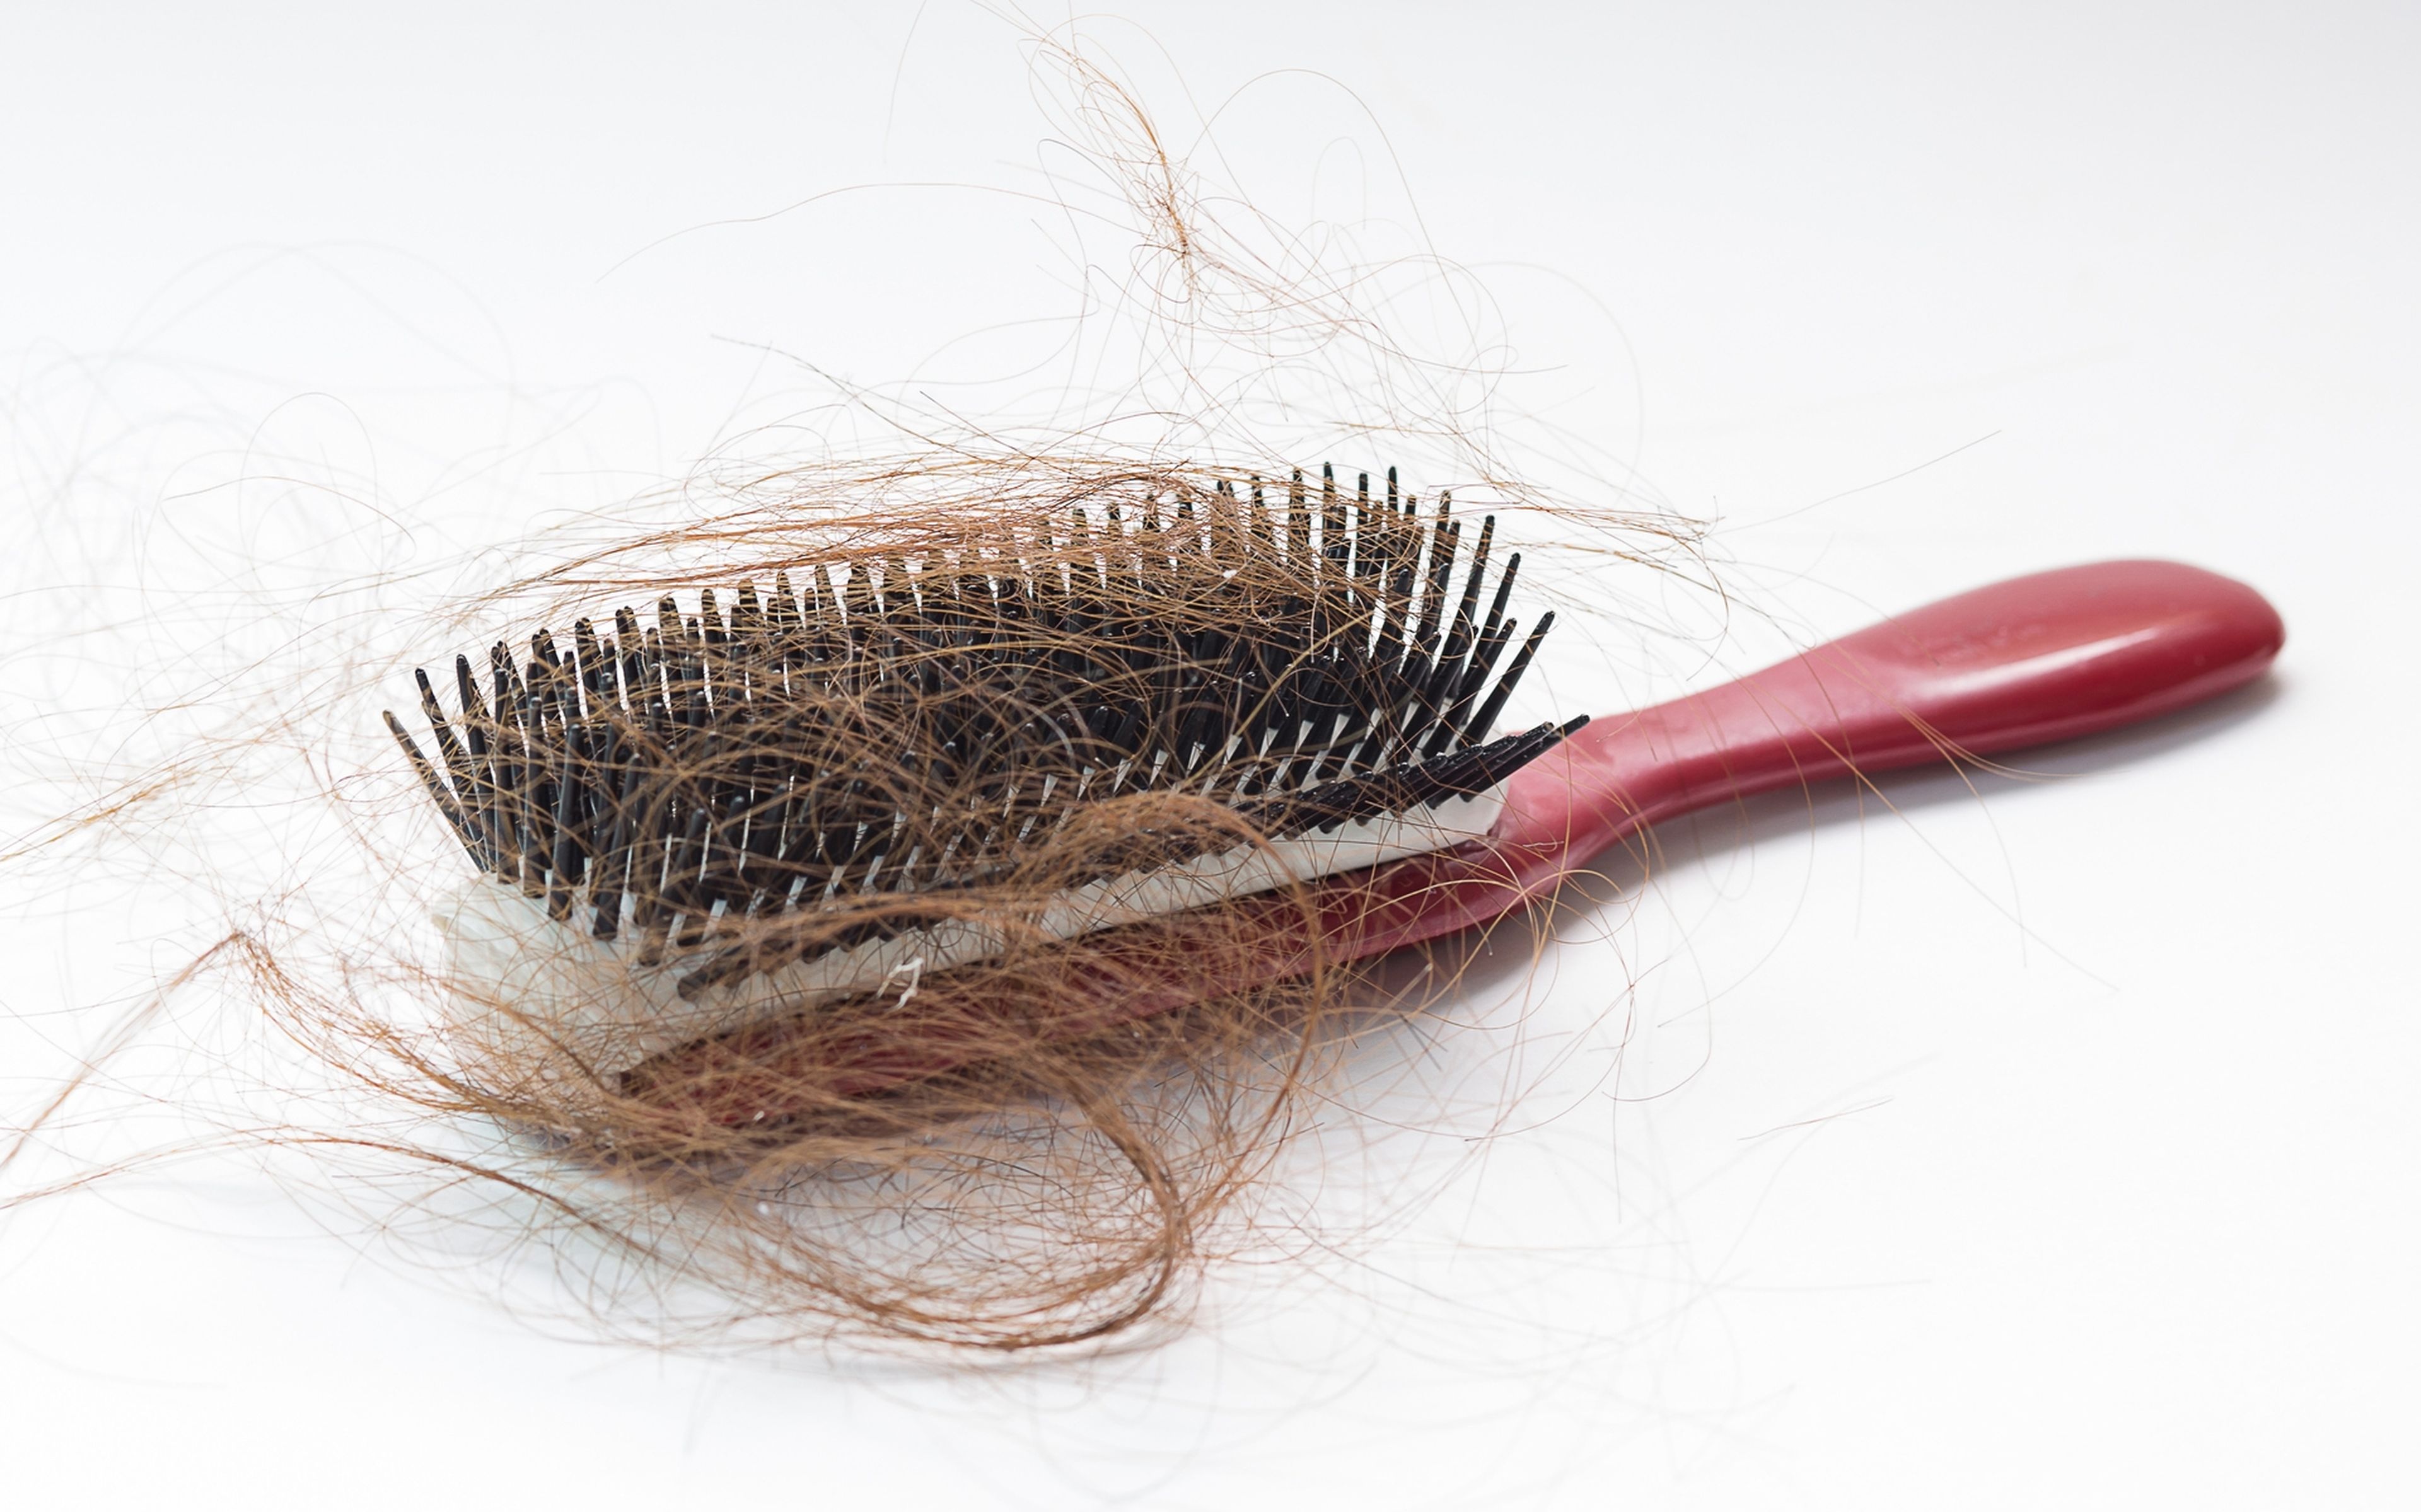 Cómo limpiar un cepillo de pelo